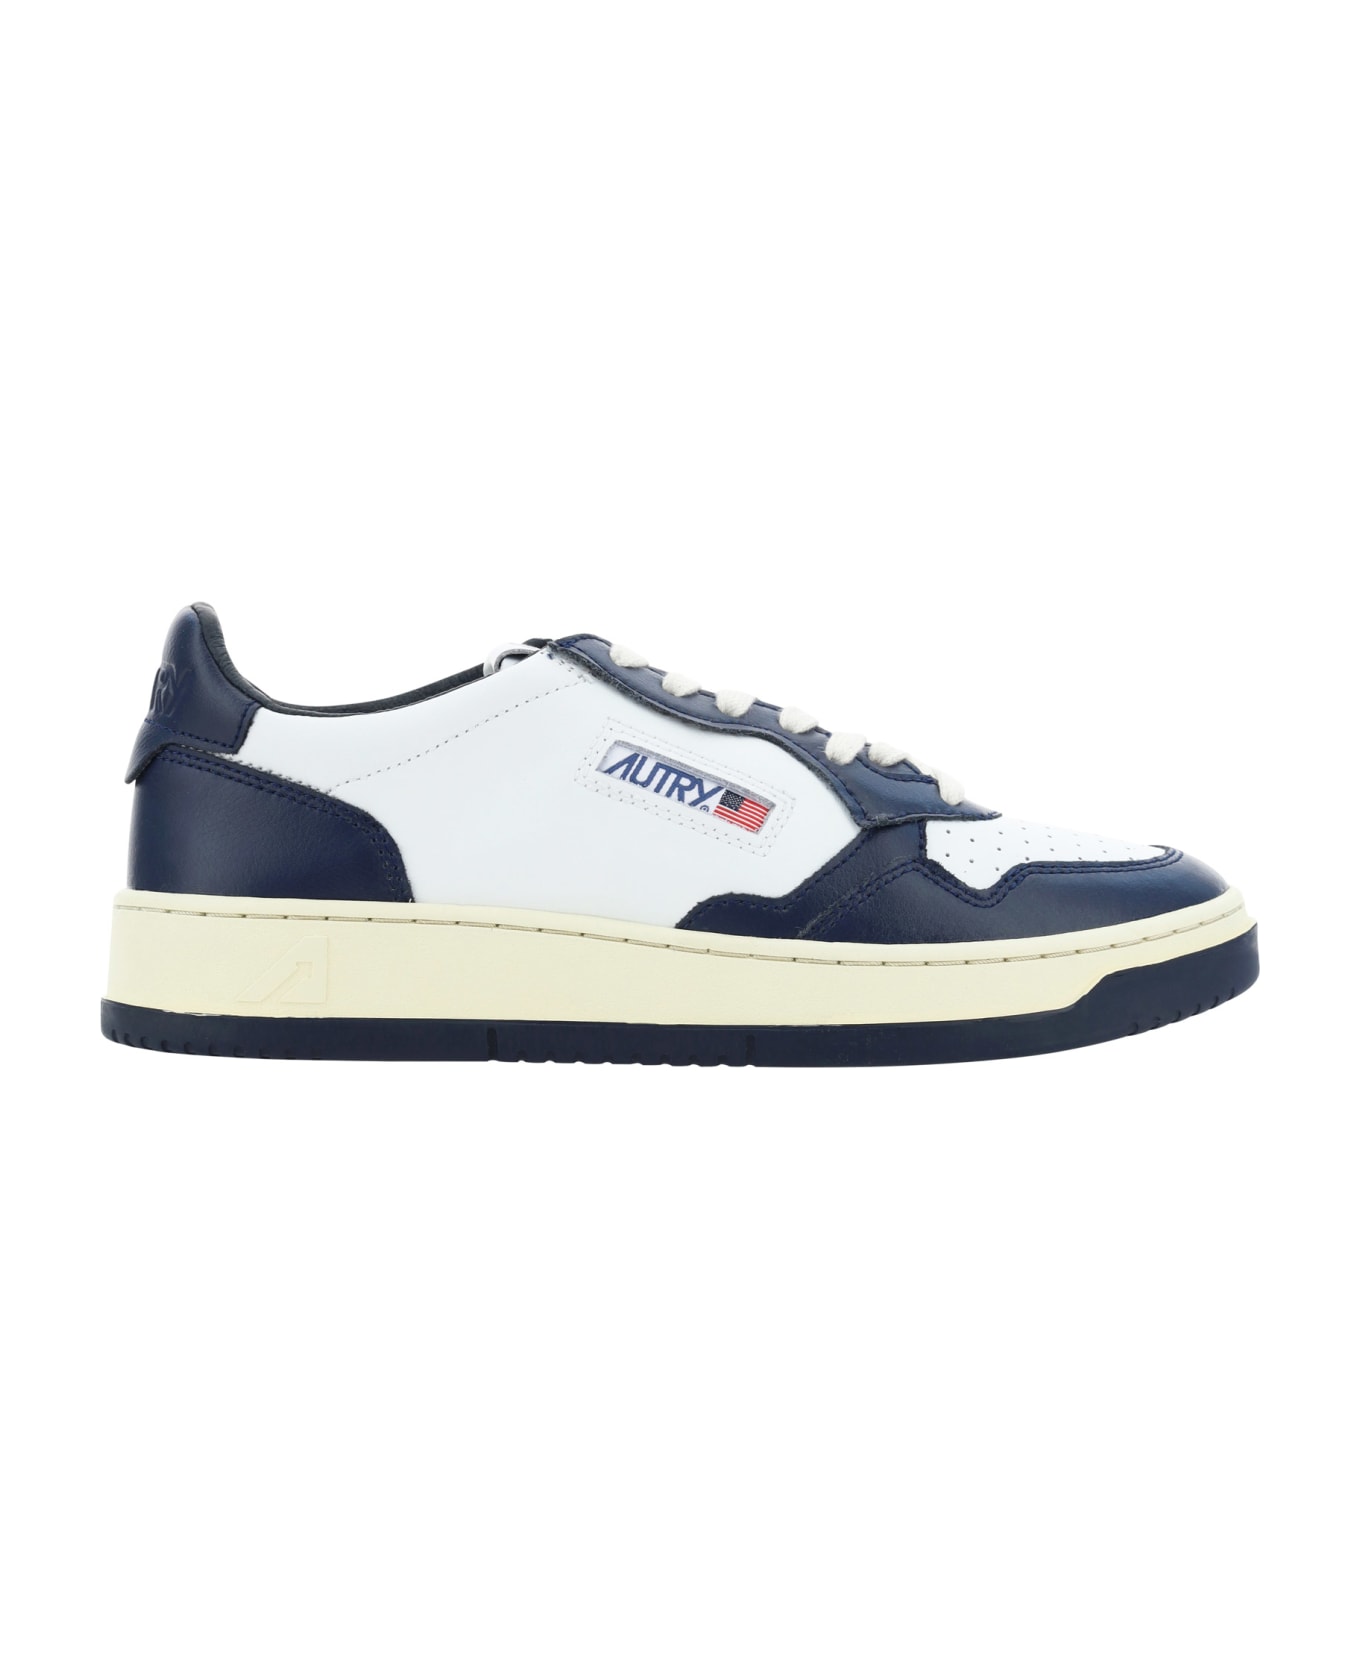 Autry Medialist Low Sneakers - Bianco/blu スニーカー